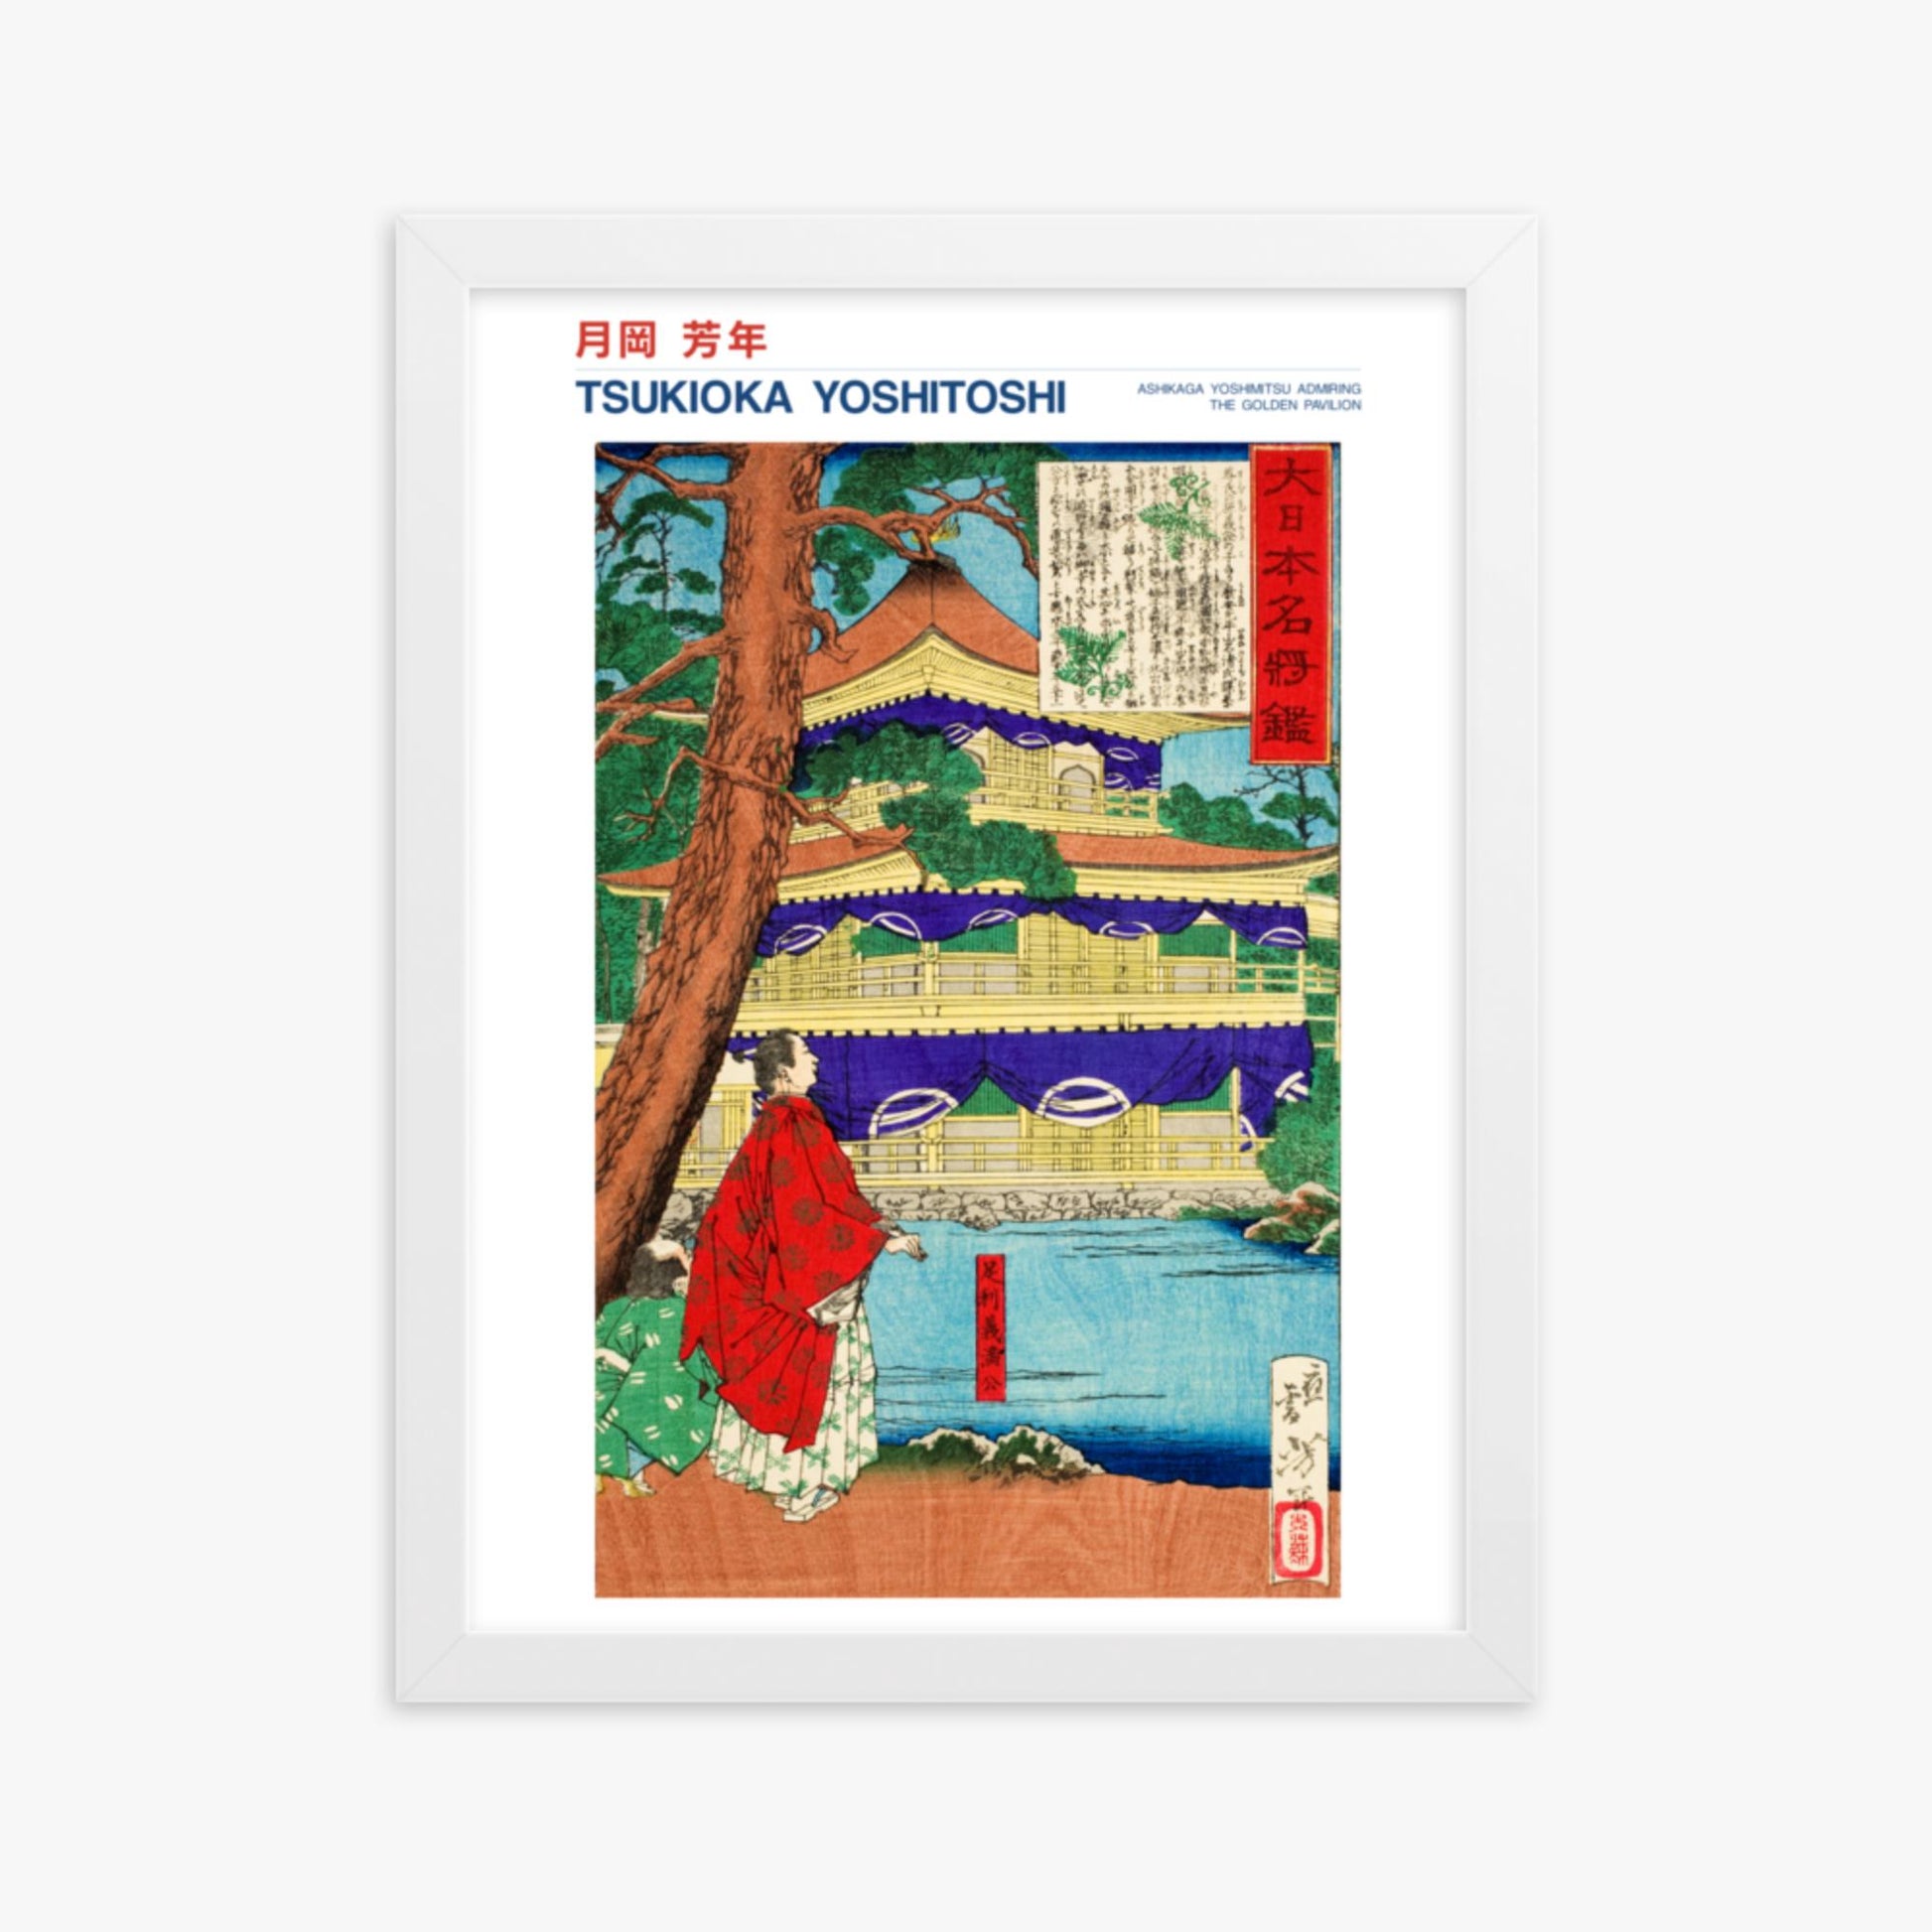 Tsukioka Yoshitoshi - Ashikaga Yoshimitsu admiring the Golden Pavilion - Decoration 30x40 cm Poster With White Frame